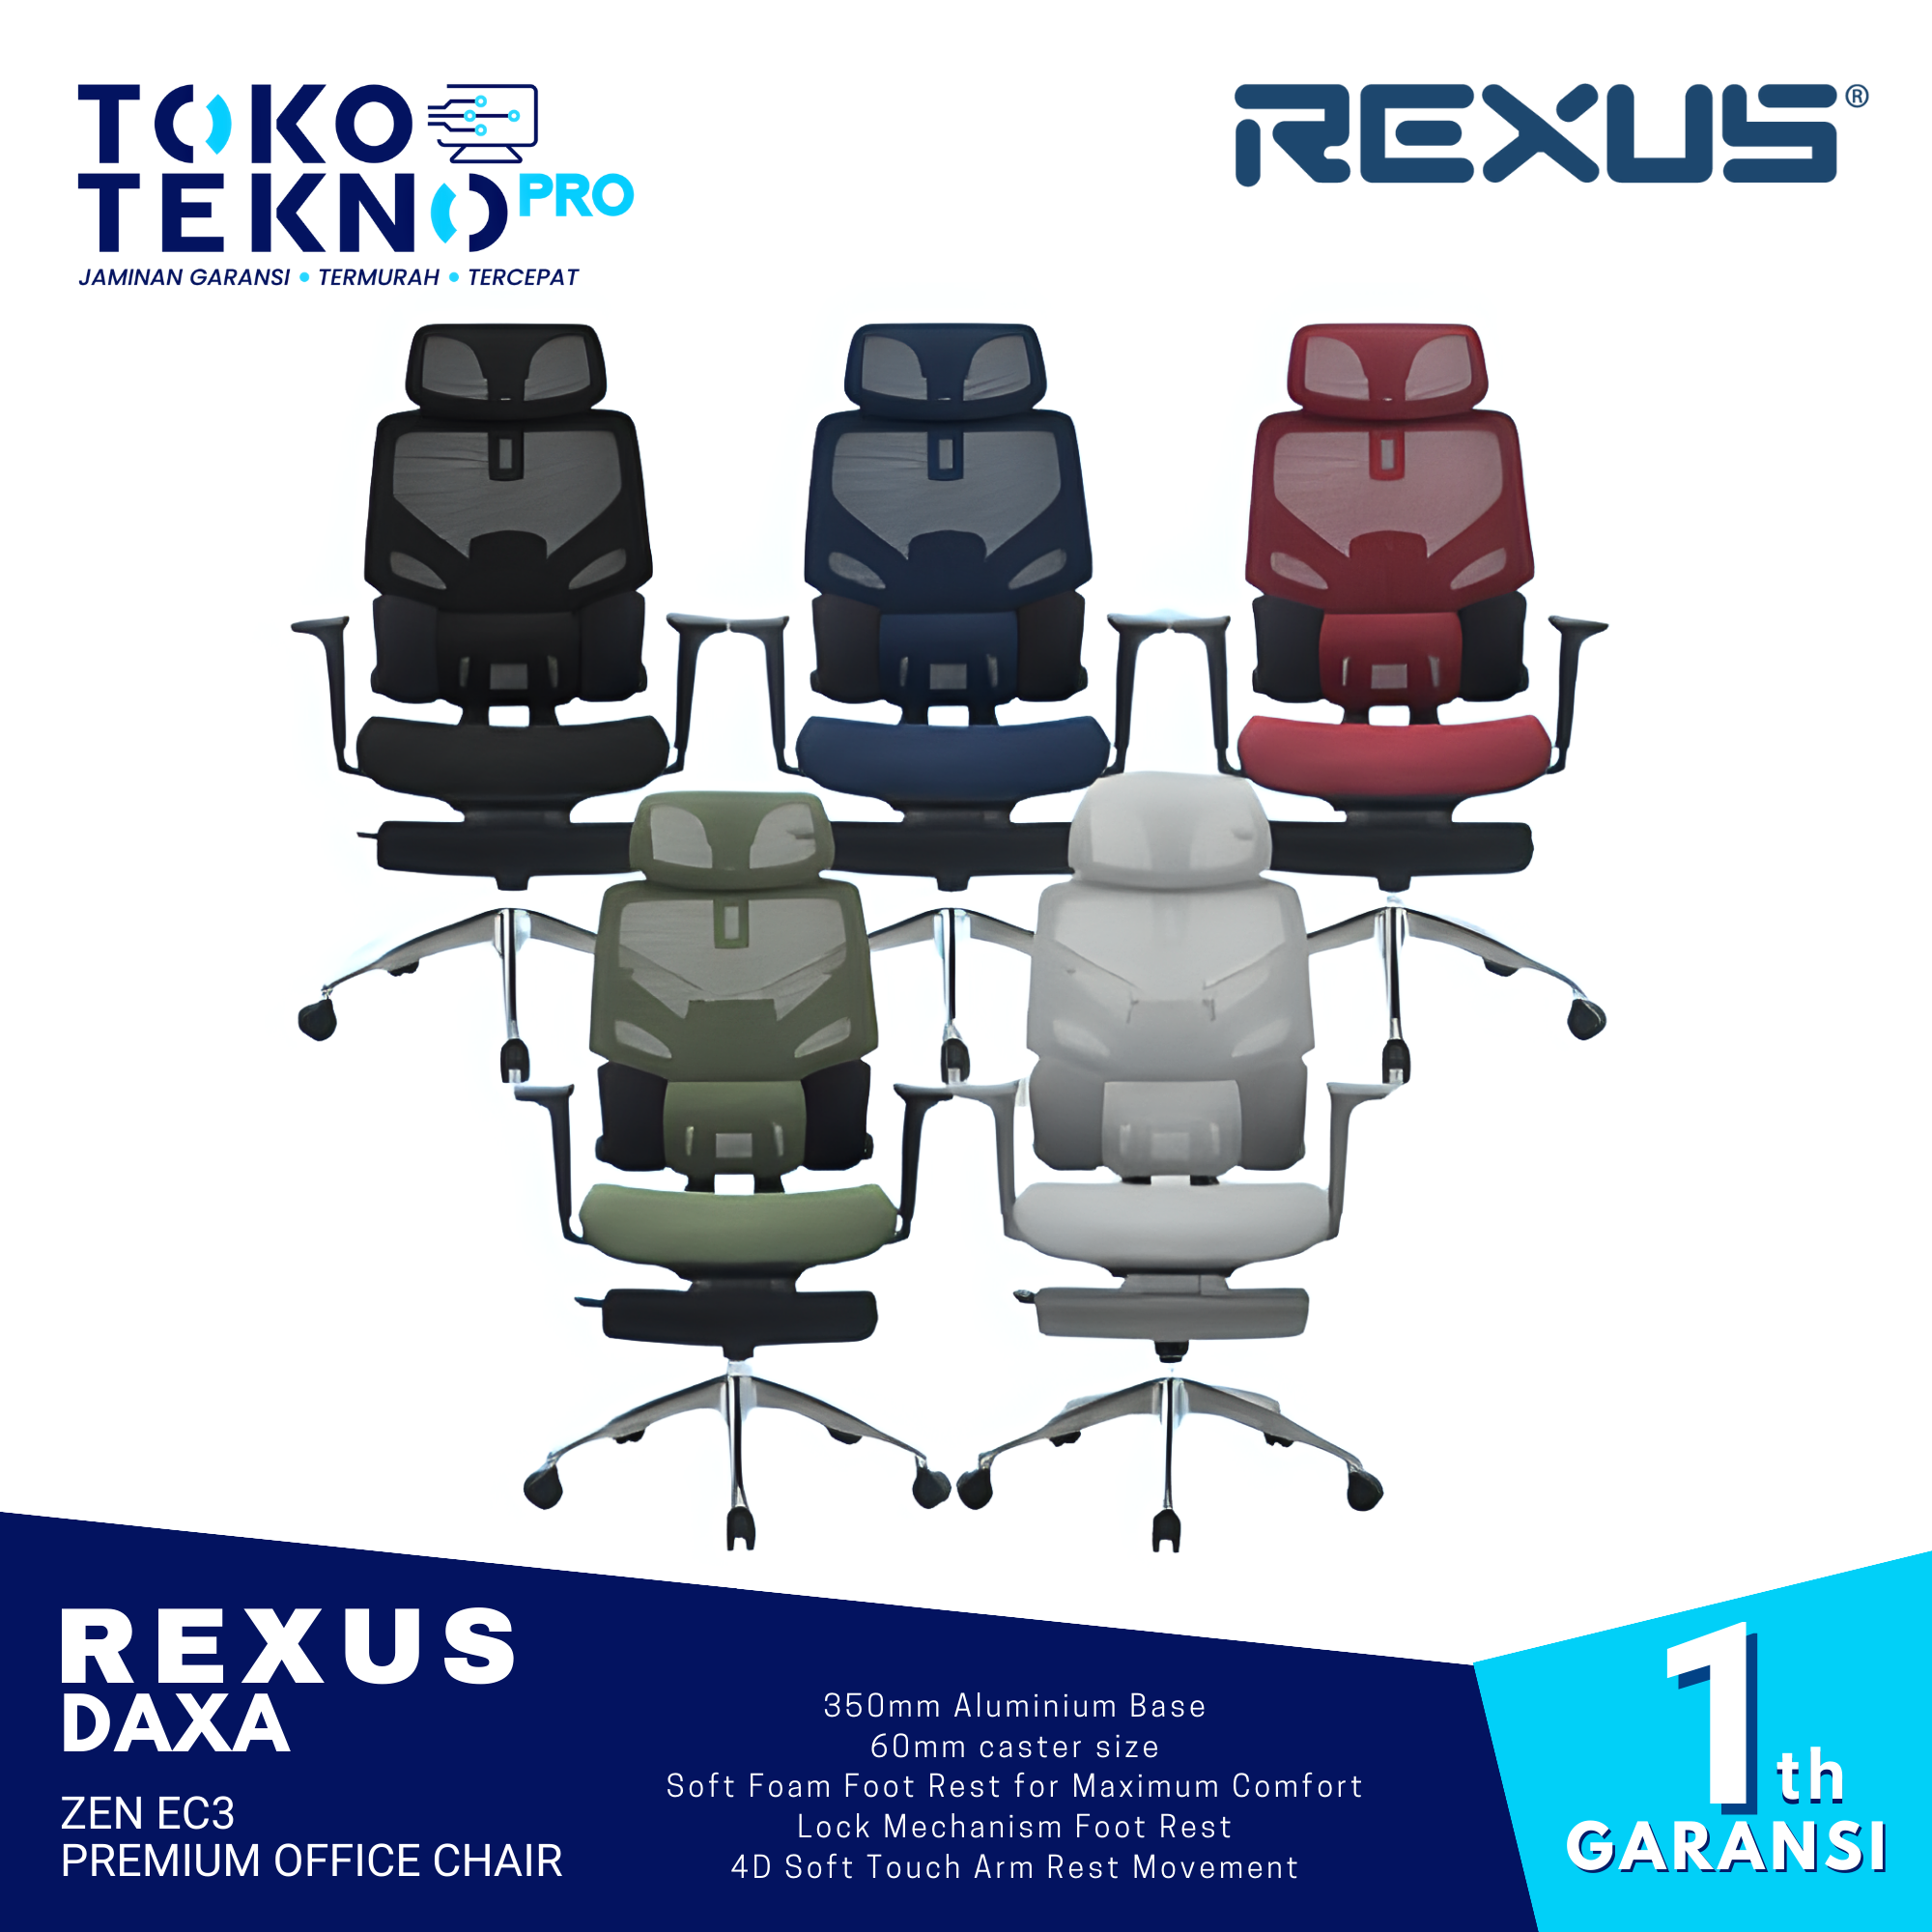 Rexus Daxa Zen EC3 Premium Office Chair With Lumbar Support